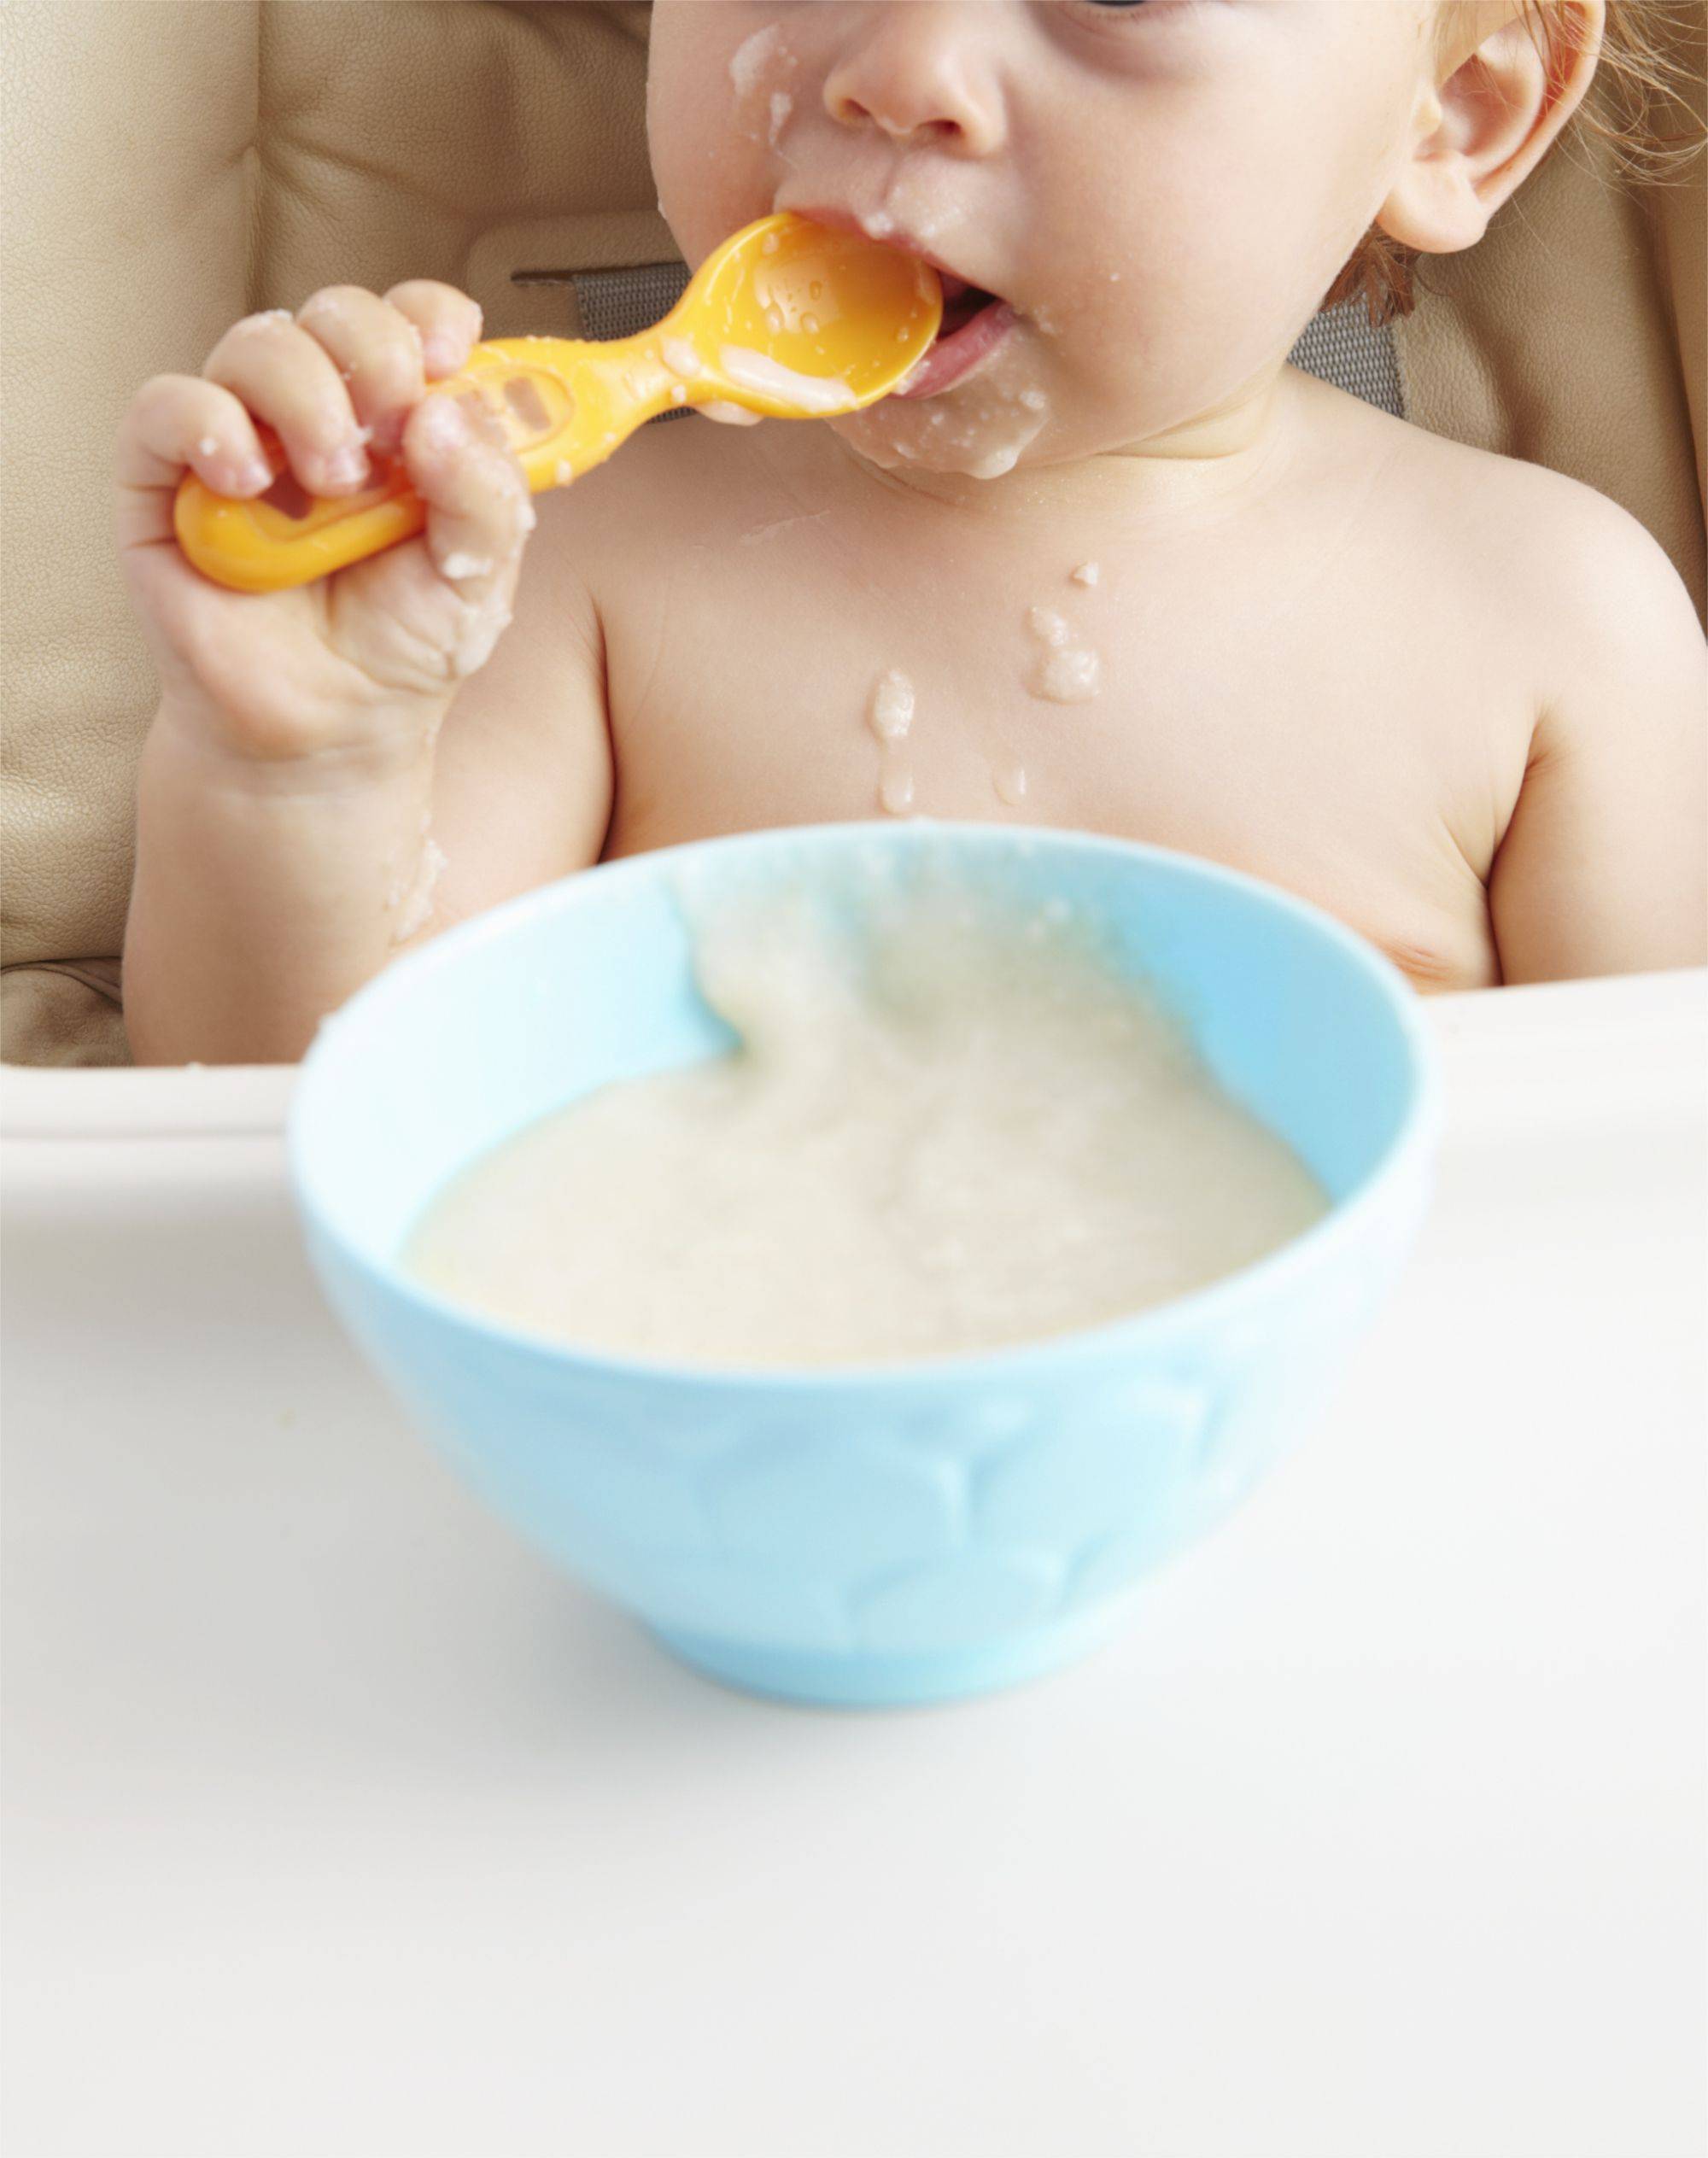 Рецепты приготовления каш для малышей от 6 месяцев до 1 года